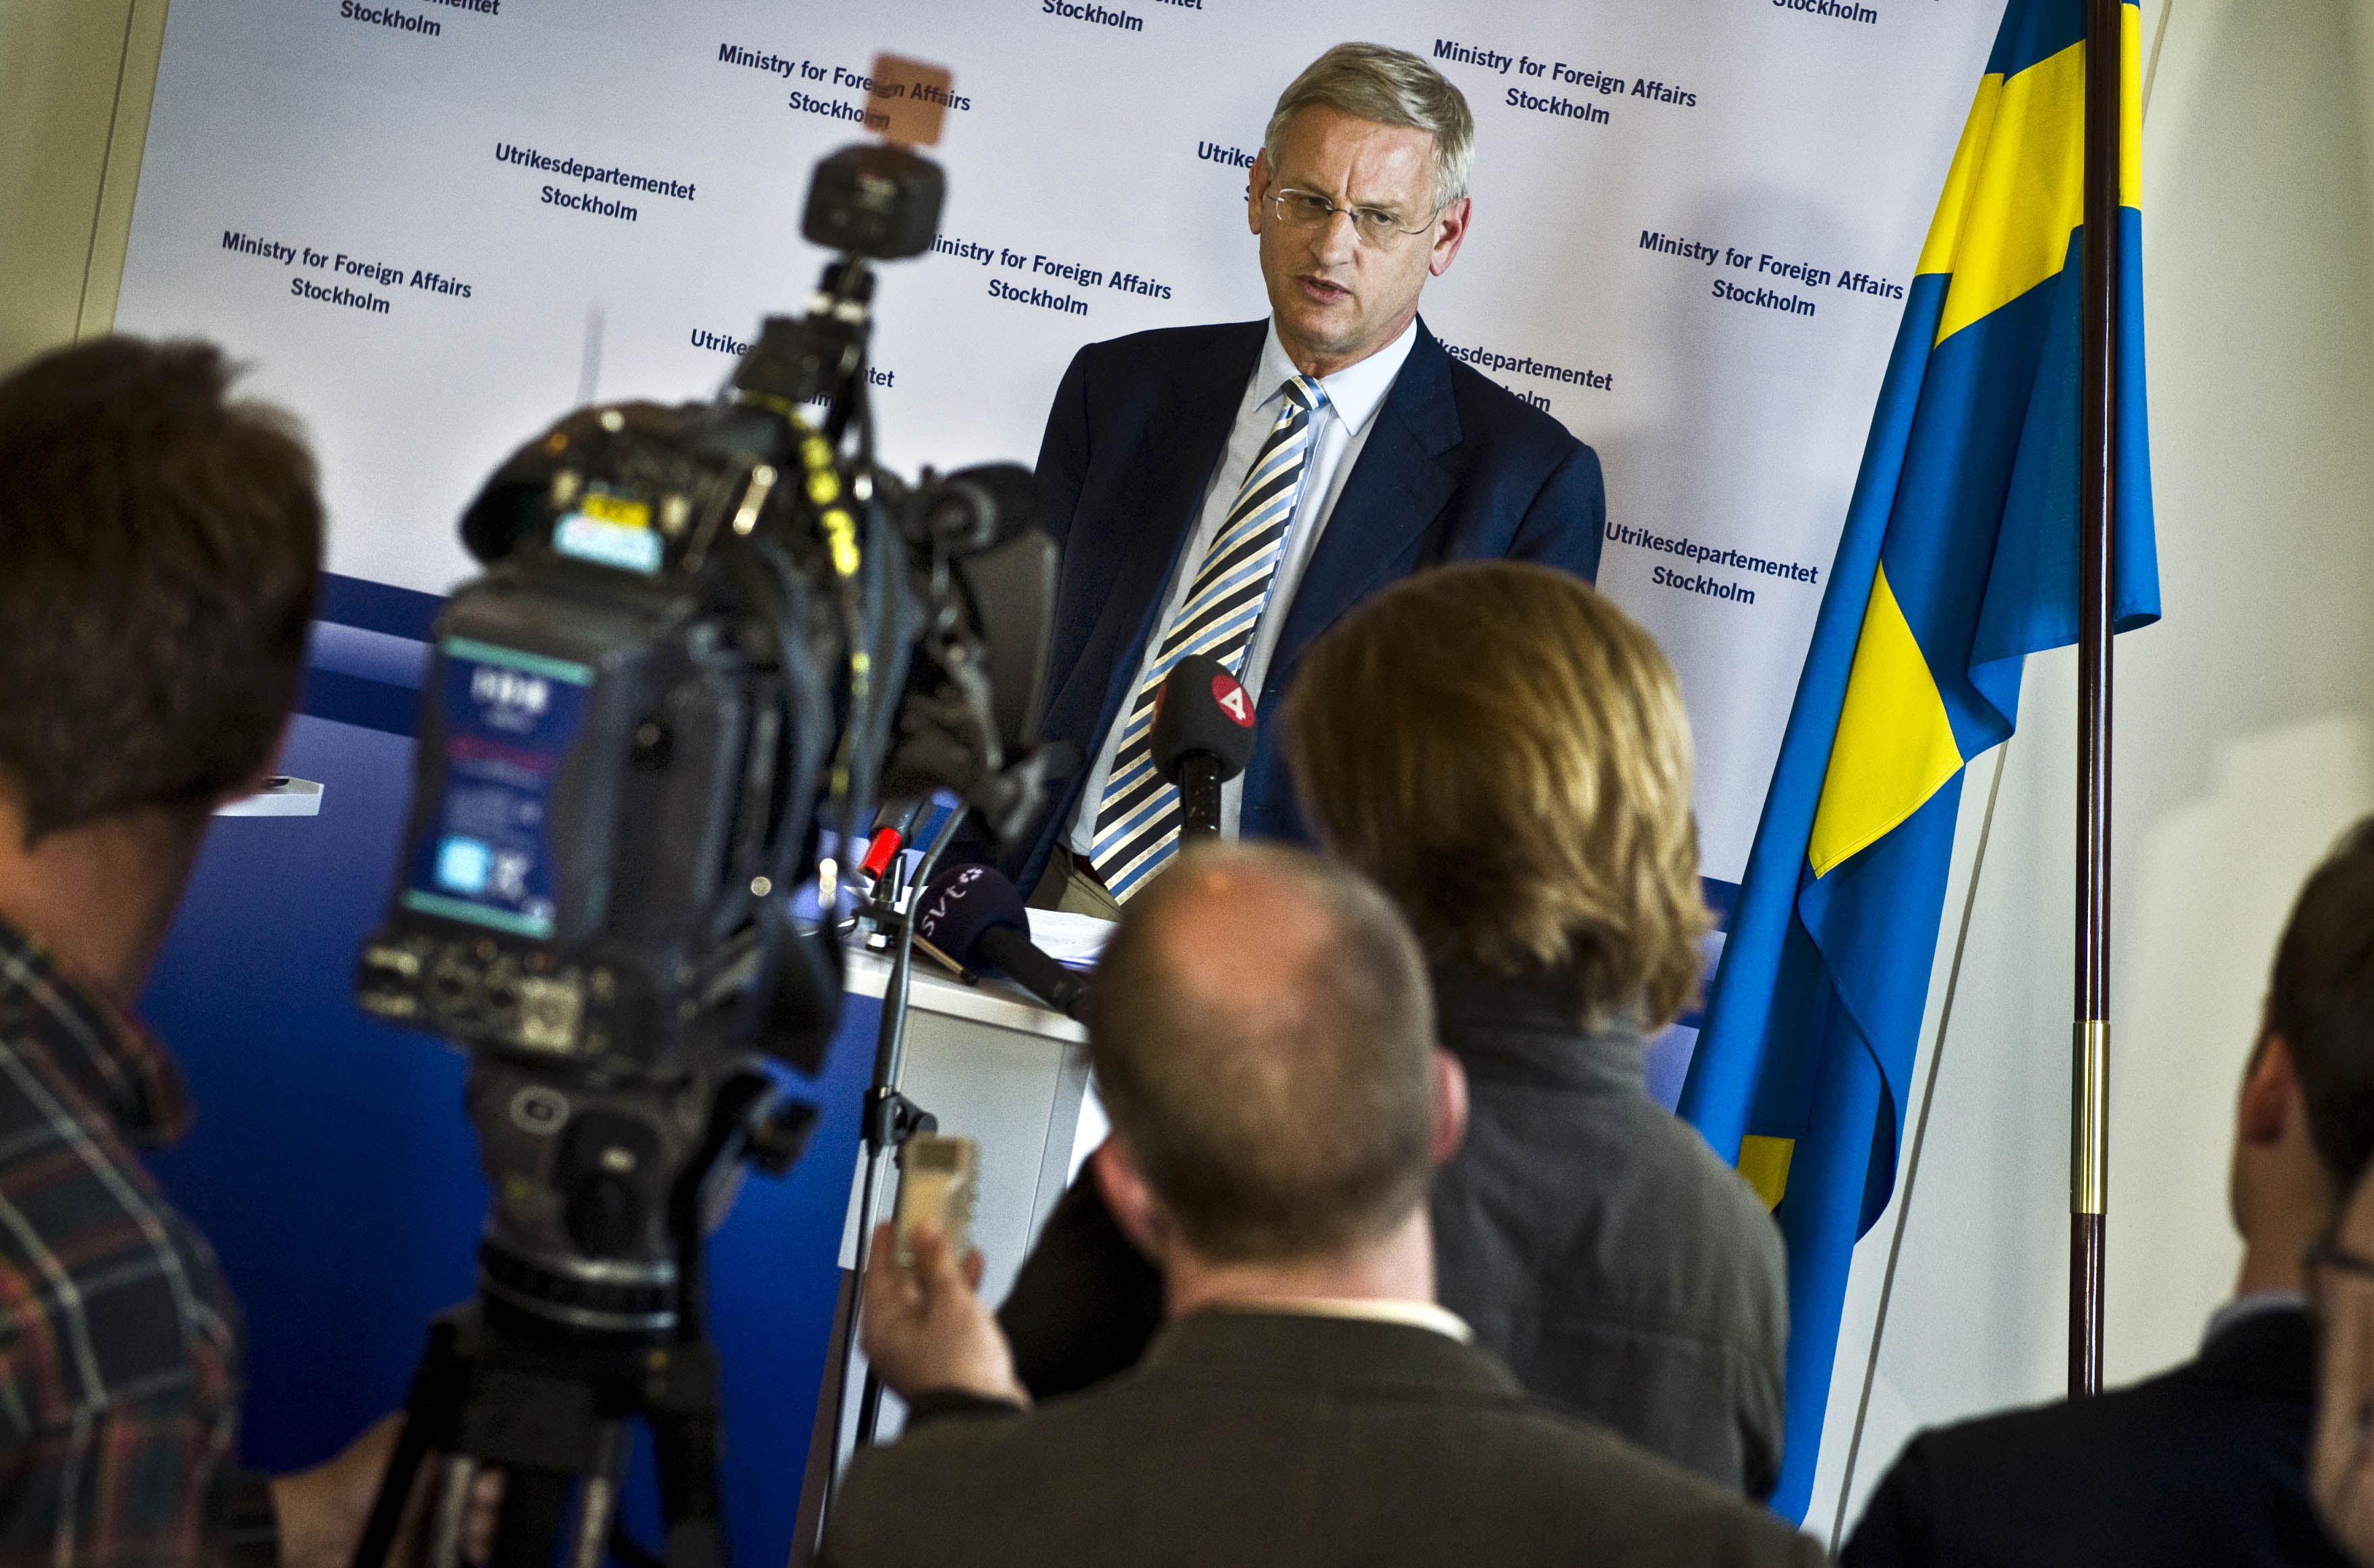 Men utrikesminister Carl Bildt (m) tycker inte att Wikileaks dokument innehåller något "sensationellt".